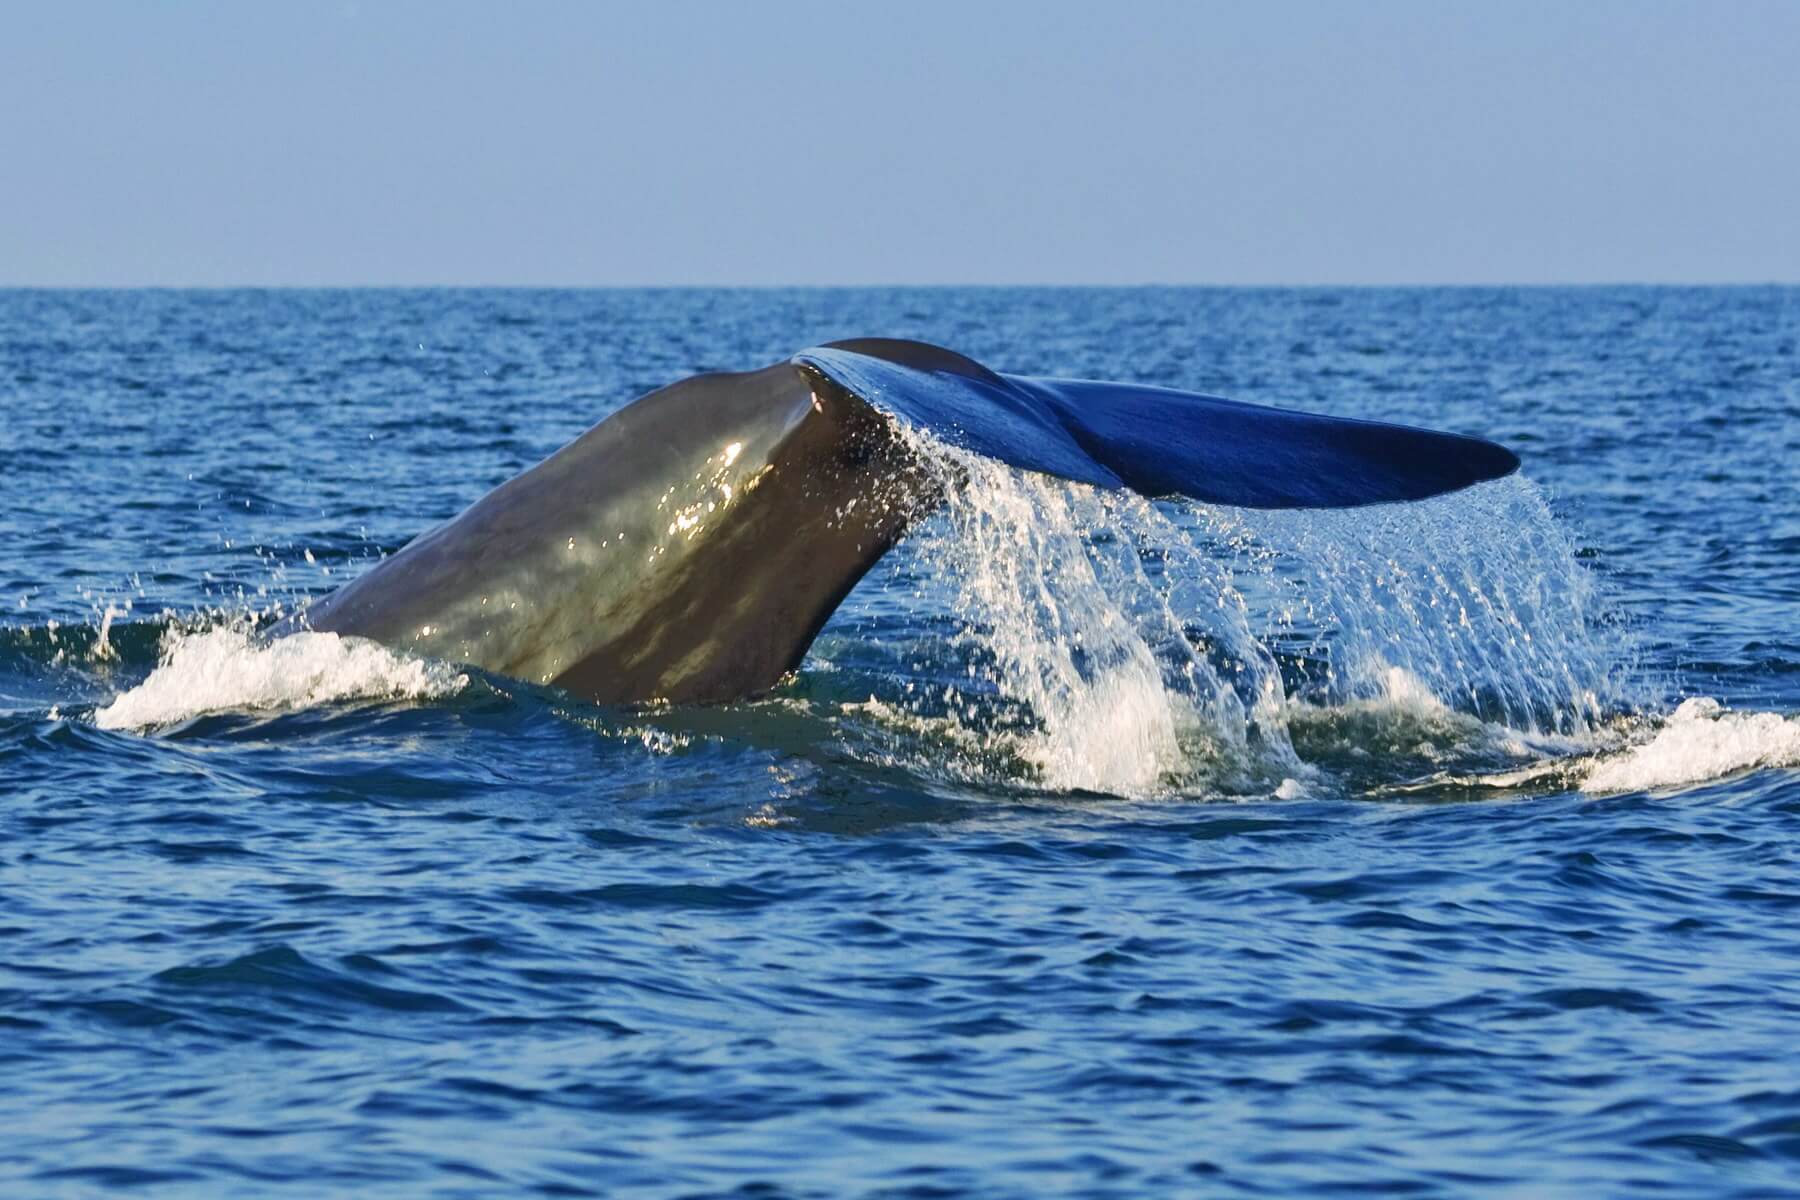 Sri Lanka hat sich längst zu einem Hotspot für Delfin- und Walbeobachtungen entwickelt, vor allem Blauwale halten sich oft vor der Ost- und der Südküste auf. Eine willkommene Abwechslung bei einer Sri Lanka Reise.